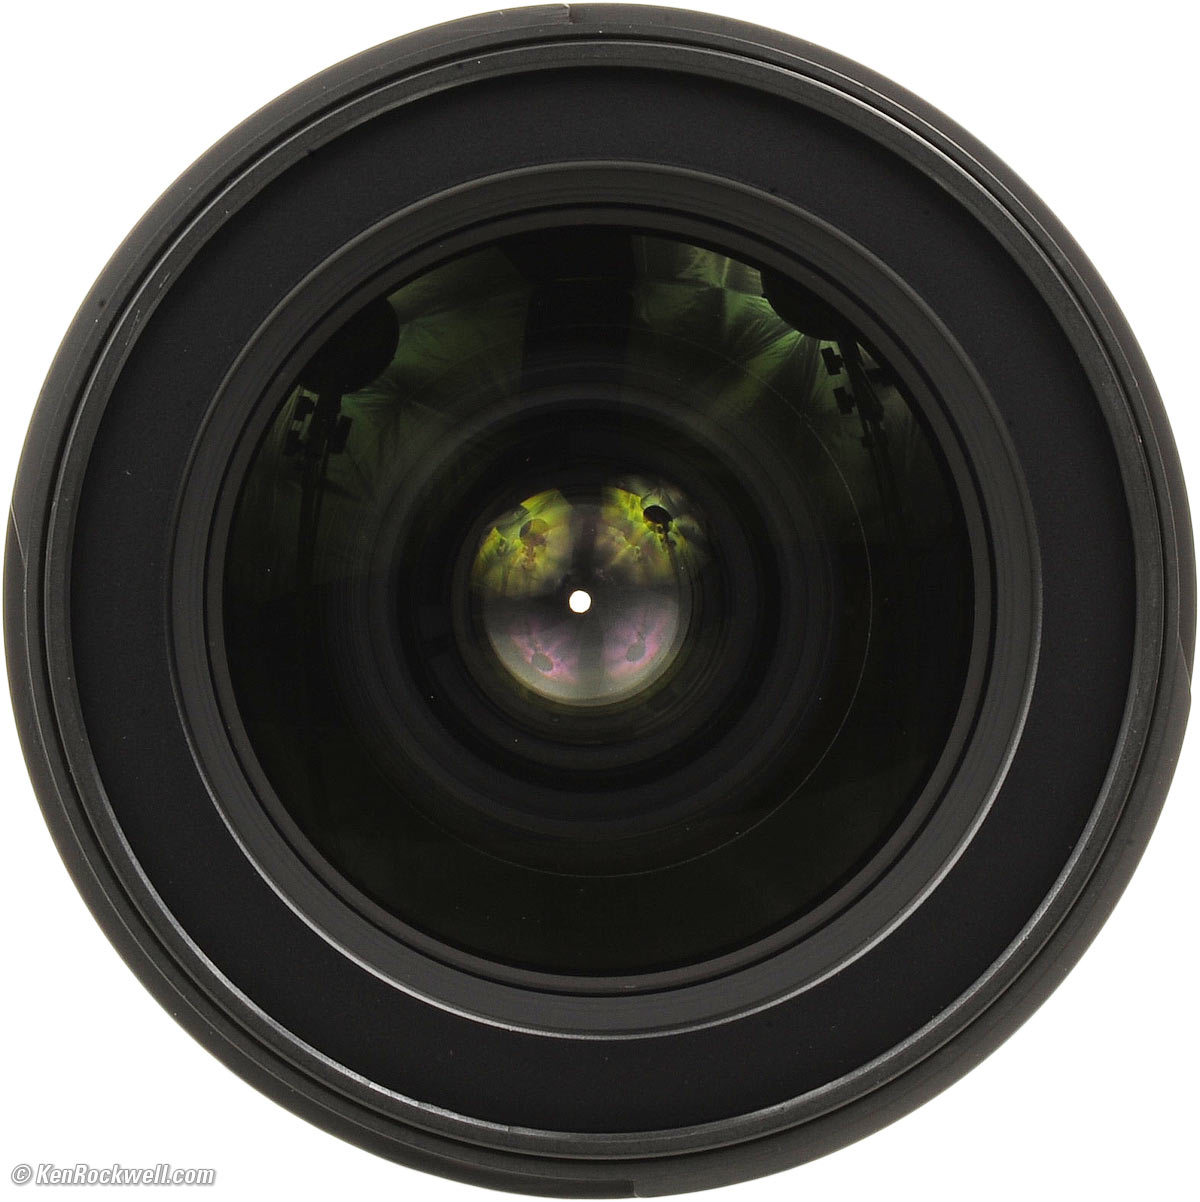 Nikon 17-55mm f/2.8 DX Review